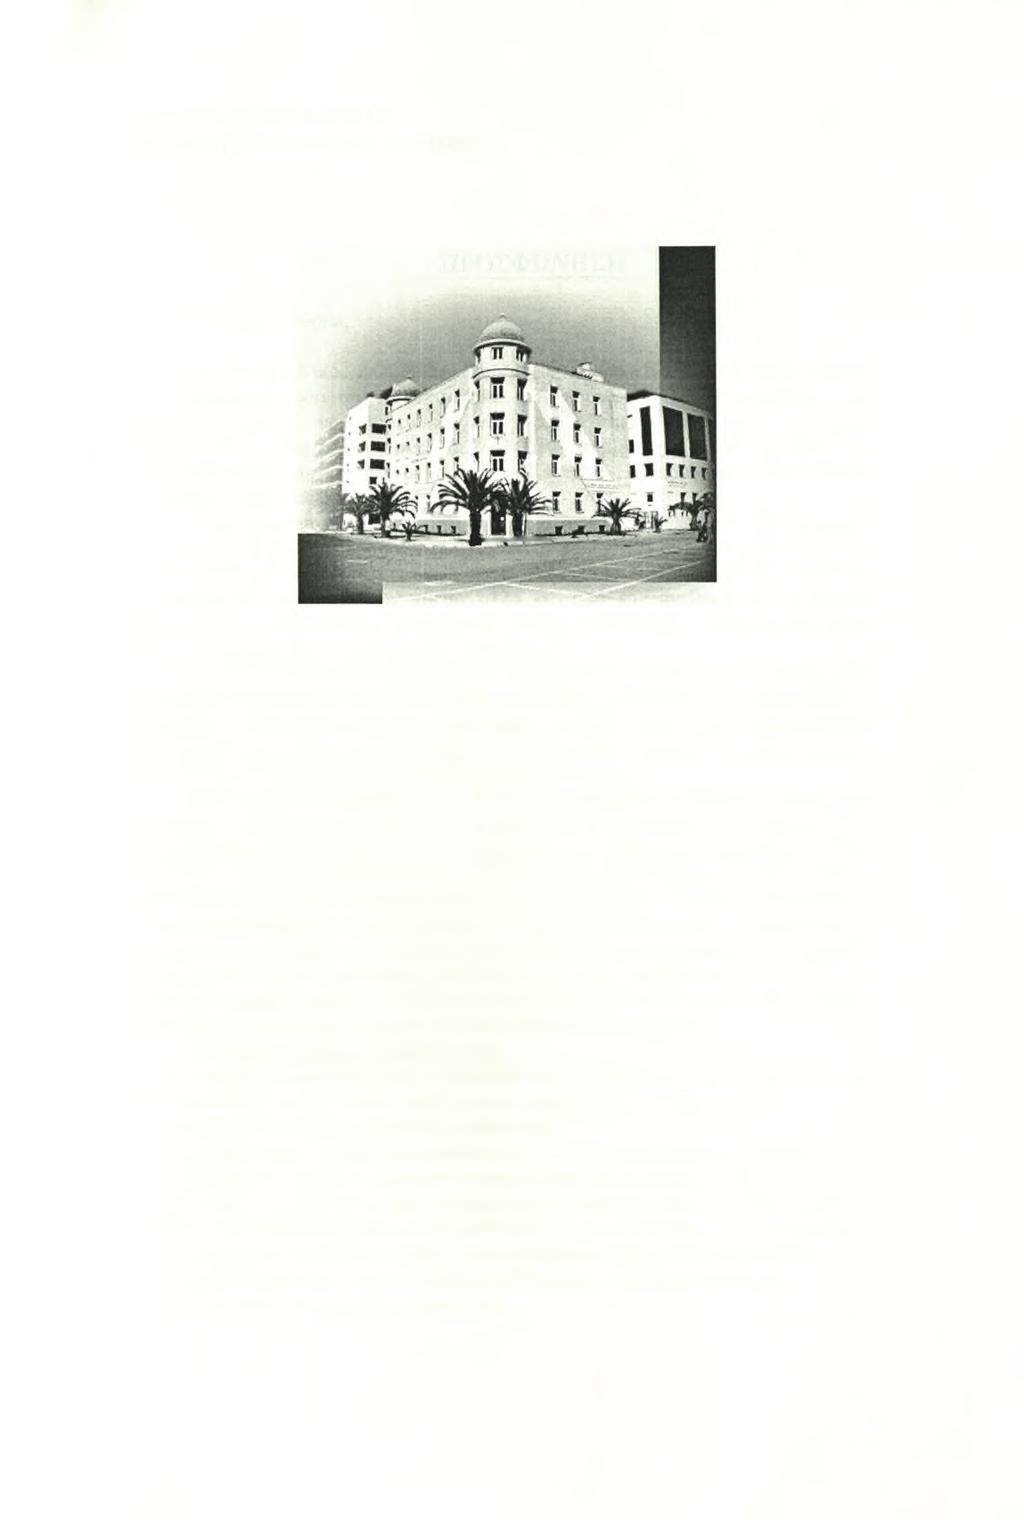 ΤΟ ΠΑΝΕΠΙΣΤΗΜΙΟ ΘΕΣΣΑΛΙΑΣ Το Πανεπιστήμιο Θεσσαλίας έχει έδρα το Βόλο και ιδρύθηκε το έτος 1984.